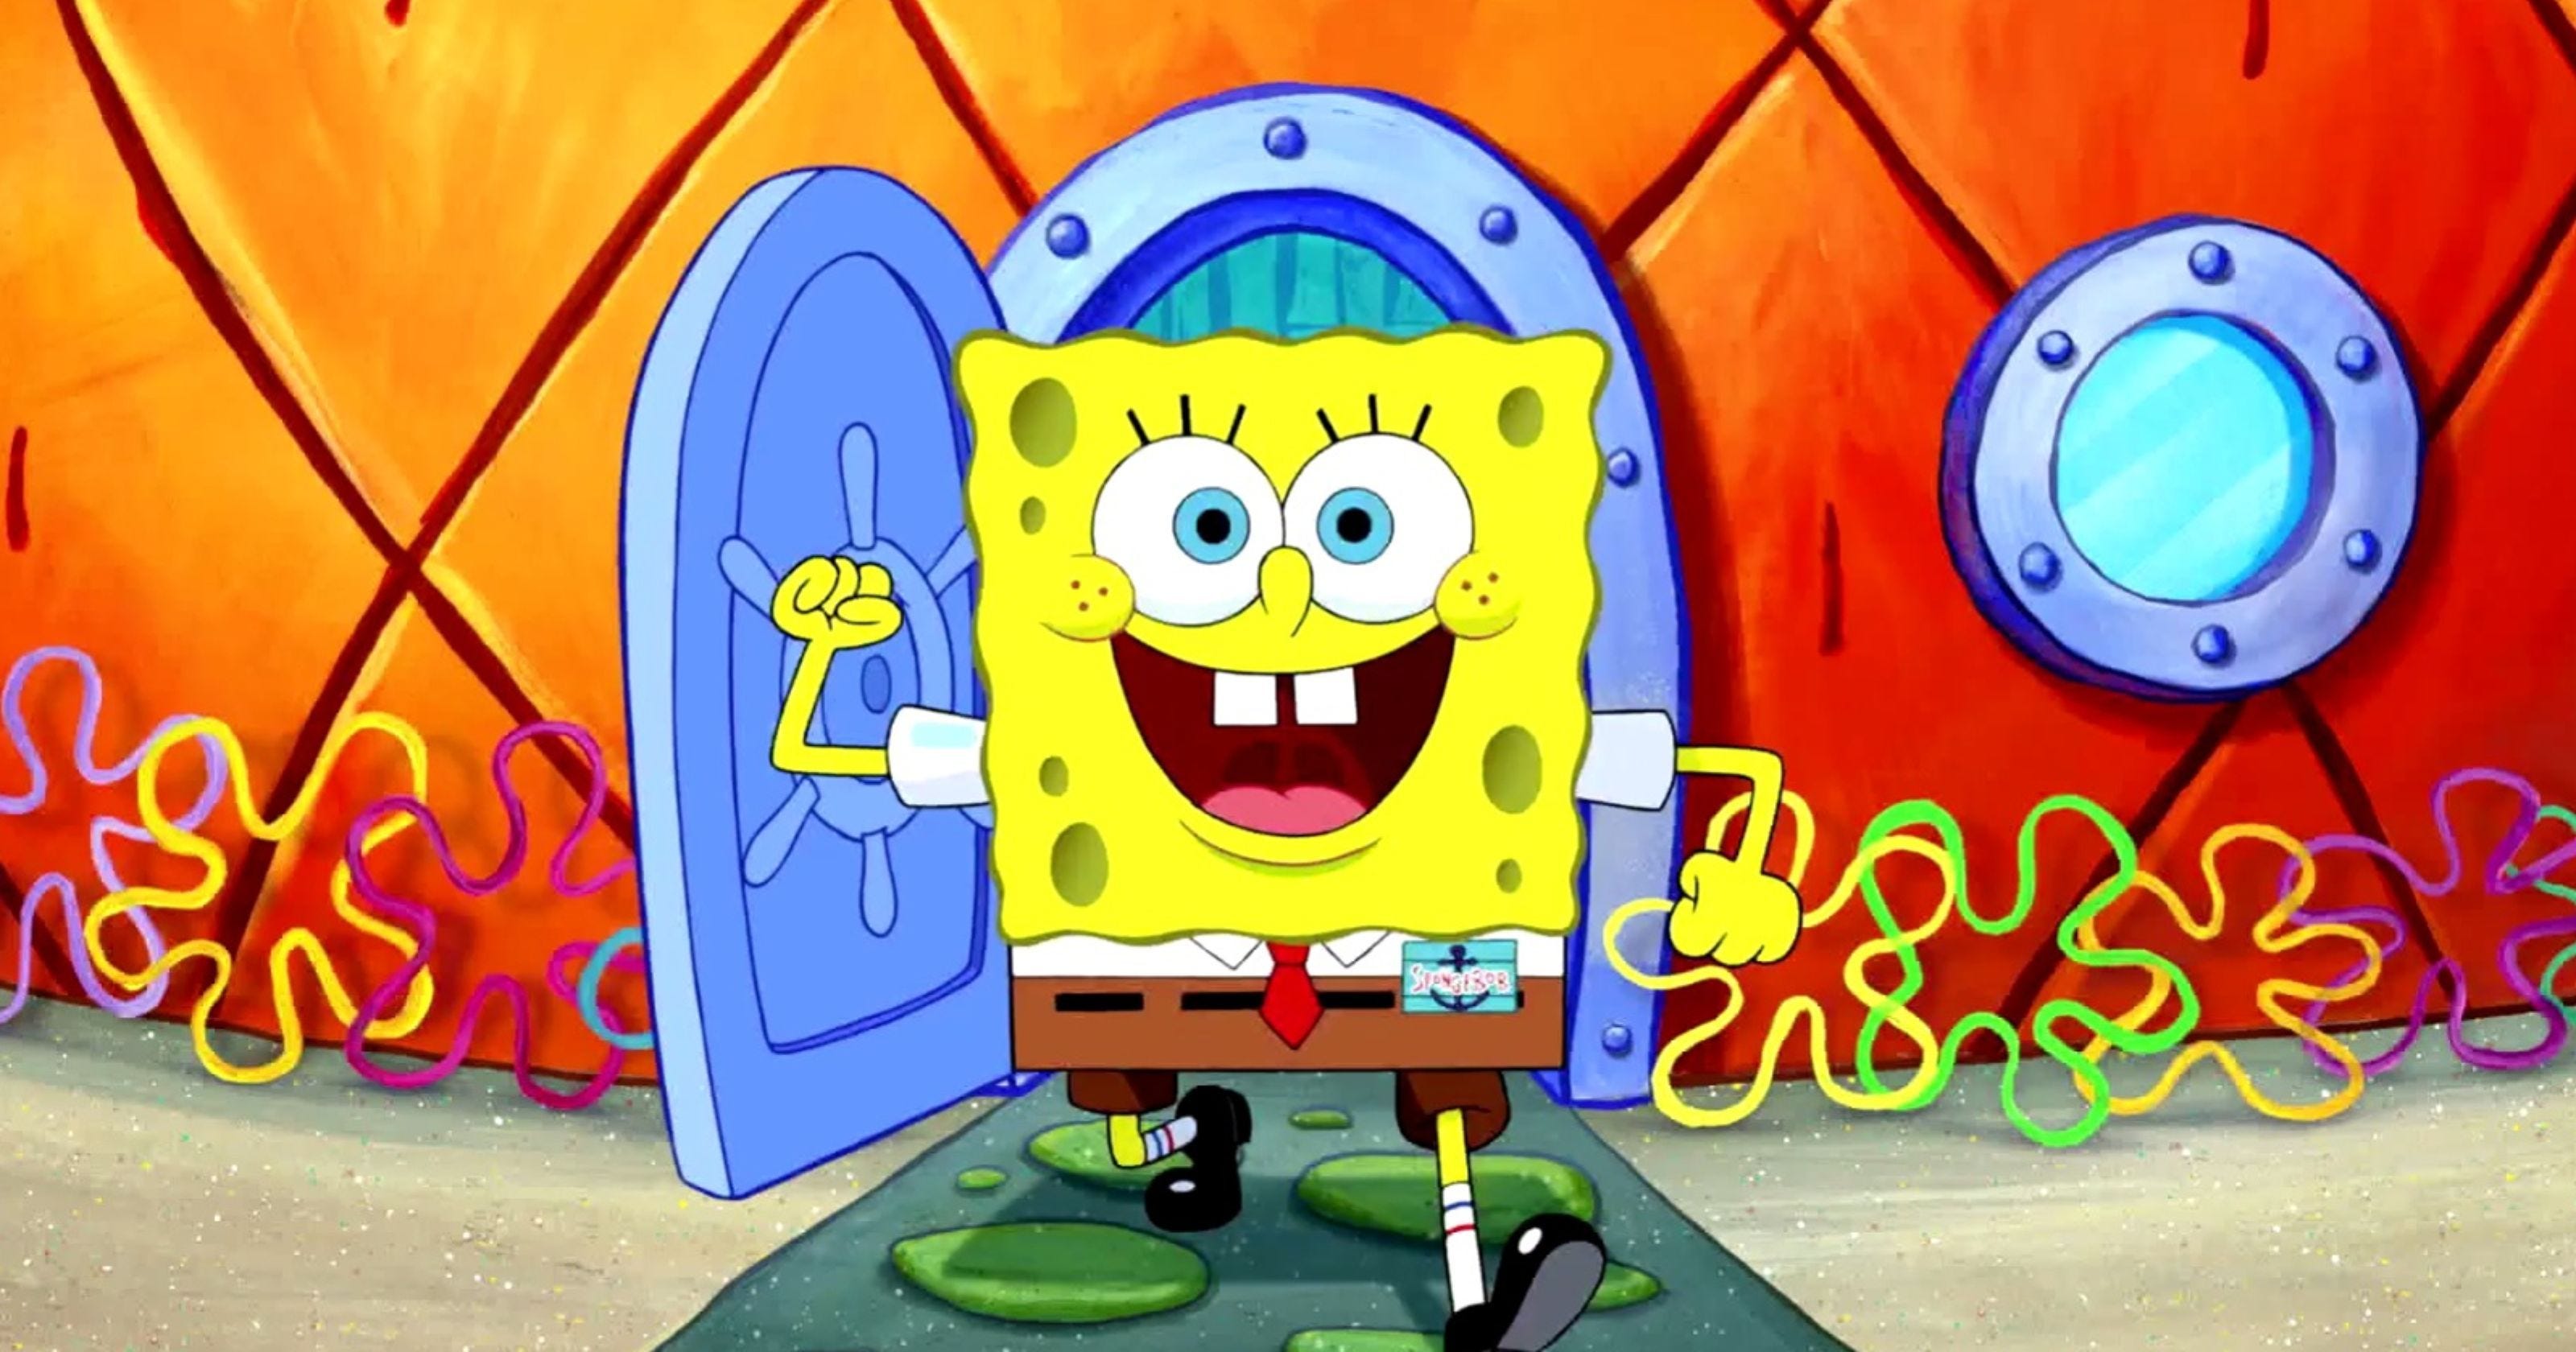 Top 10 Spongebob Songs Spongebob Squarepants Is One Of The By Logan Busbee Medium